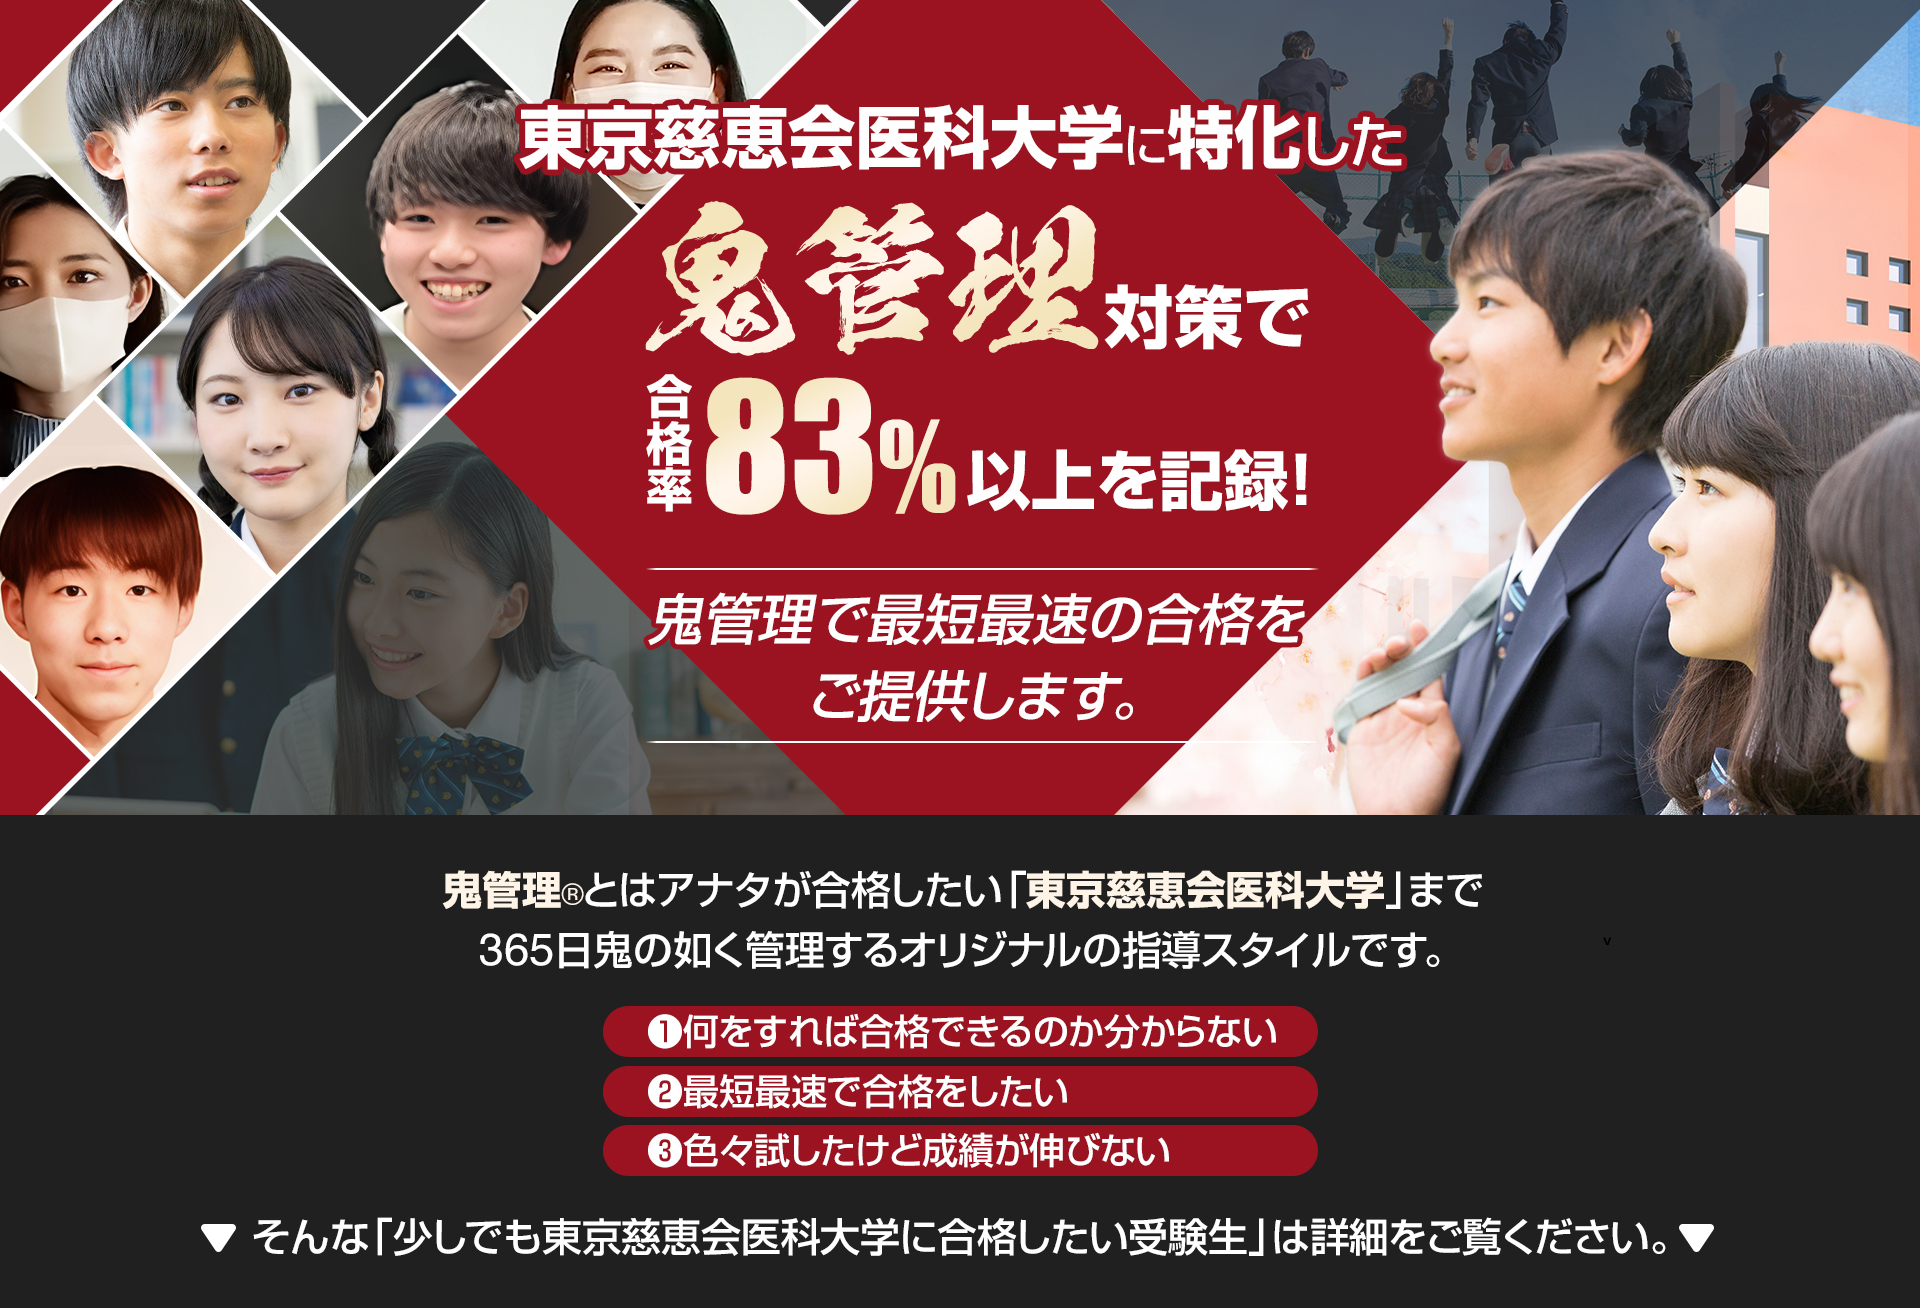 東京慈恵会医科大学に特化した鬼管理対策で合格率83％以上を記録。鬼管理でアナタが合格したい東京慈恵会医科大学への最短最速の合格を提供します。